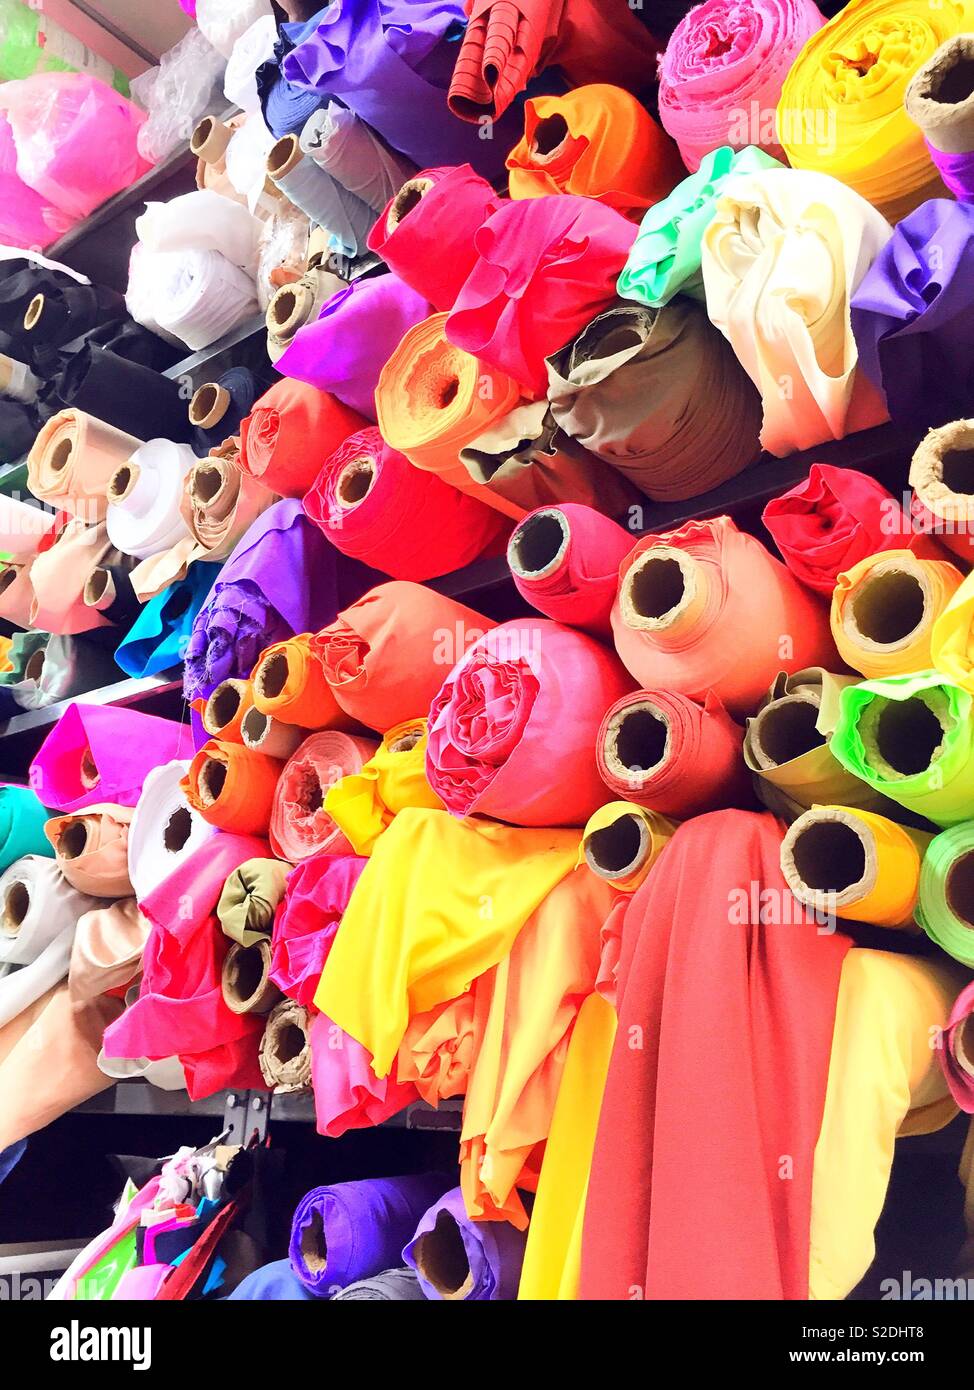 Rouleaux de tissus colorés dans un magasin de tissu au détail dans le quartier de garment, NYC, USA Banque D'Images